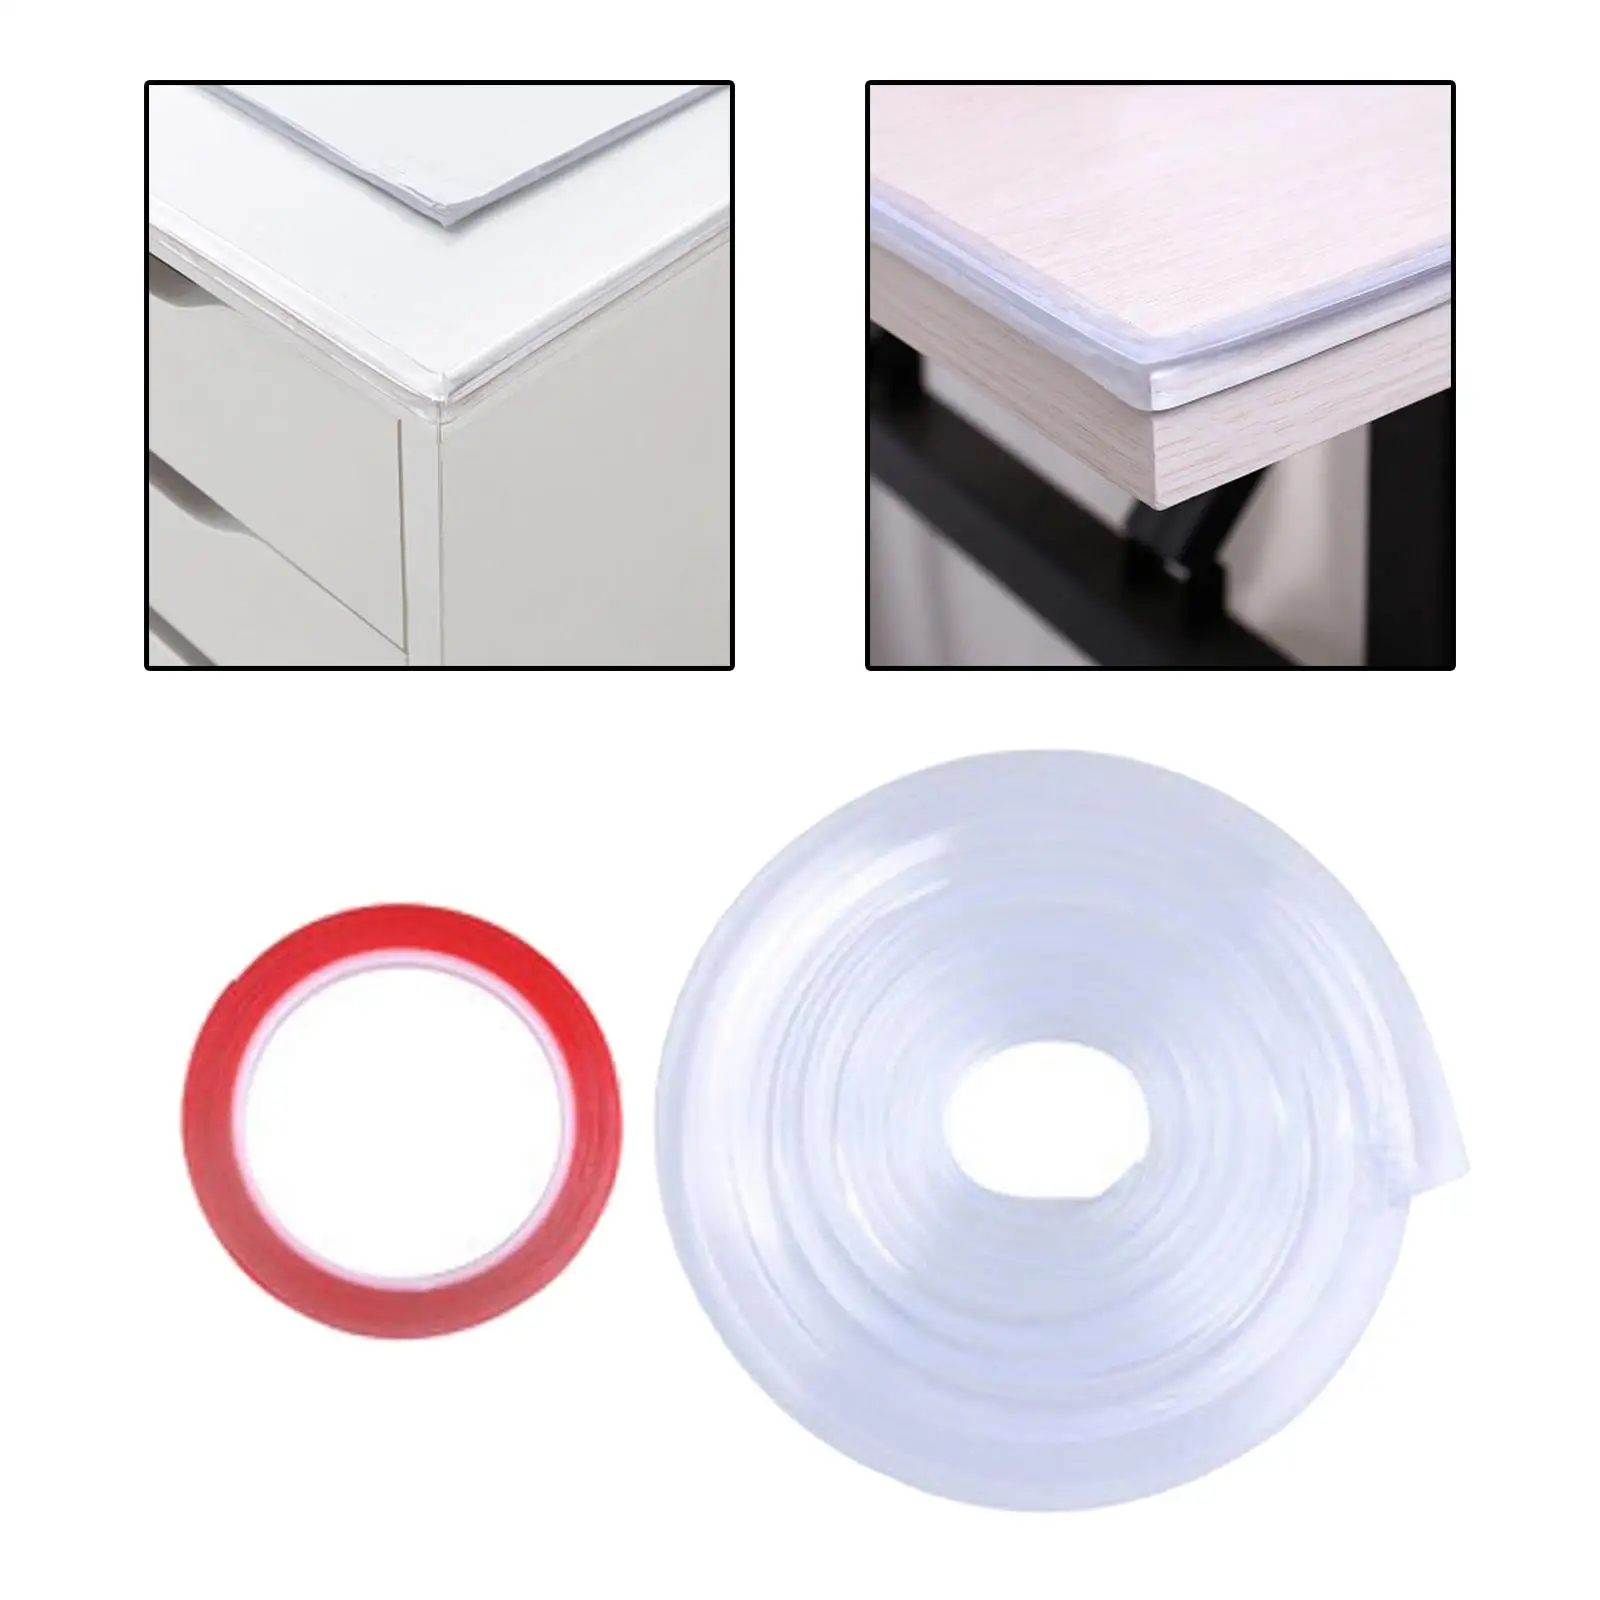 1M Edge Protector Strip Desk Corner Bumper for Cabinets Furniture Sofa